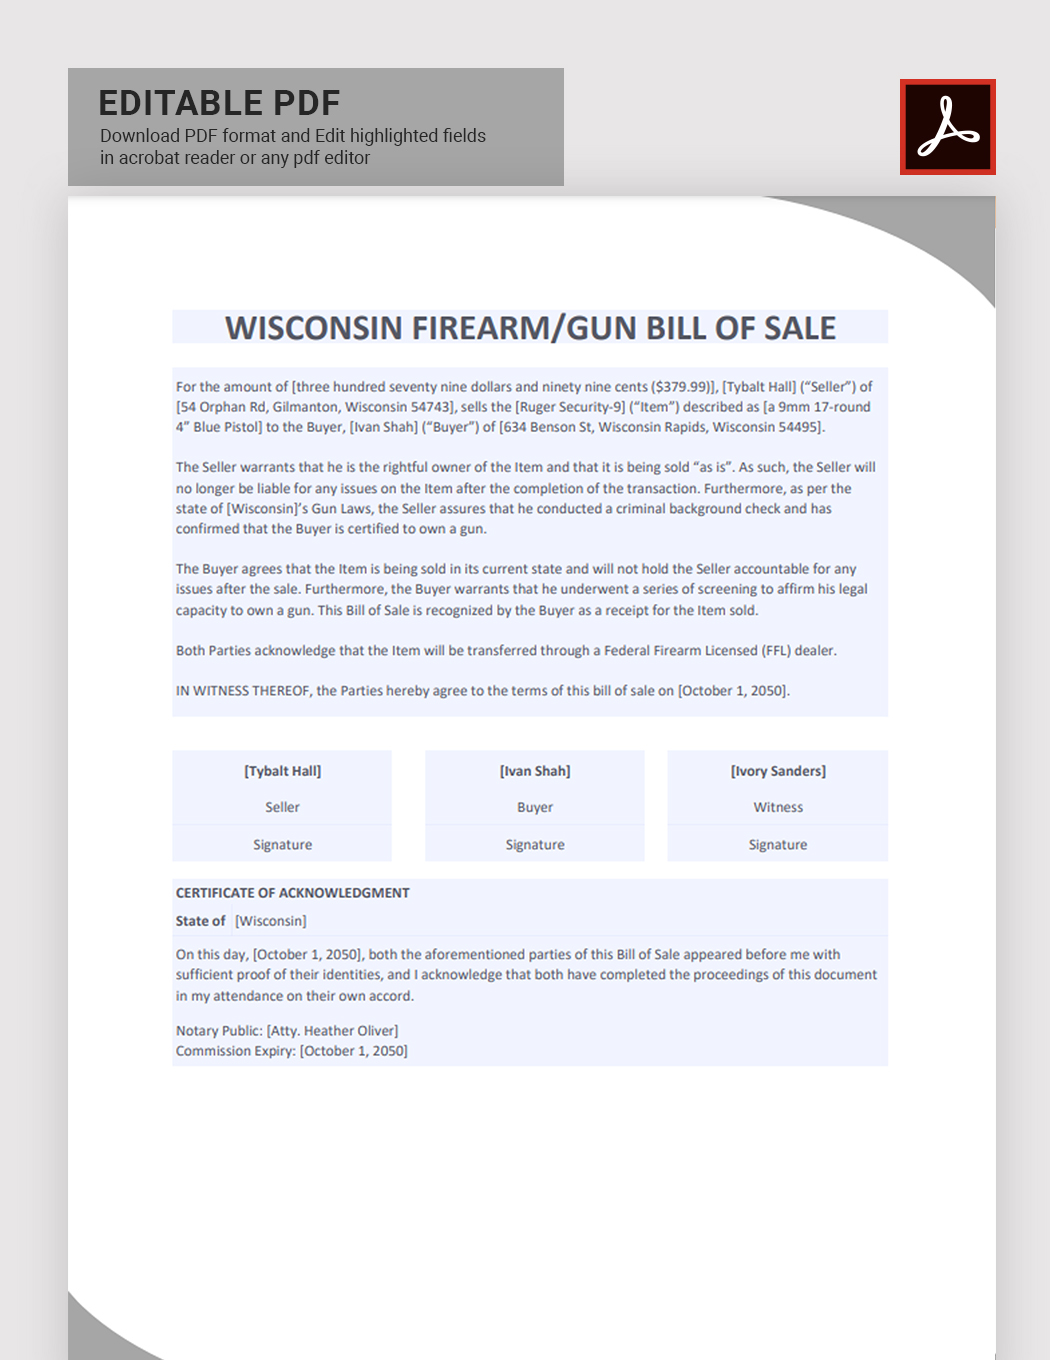 Wisconsin Firearm/Gun Bill of Sale Template